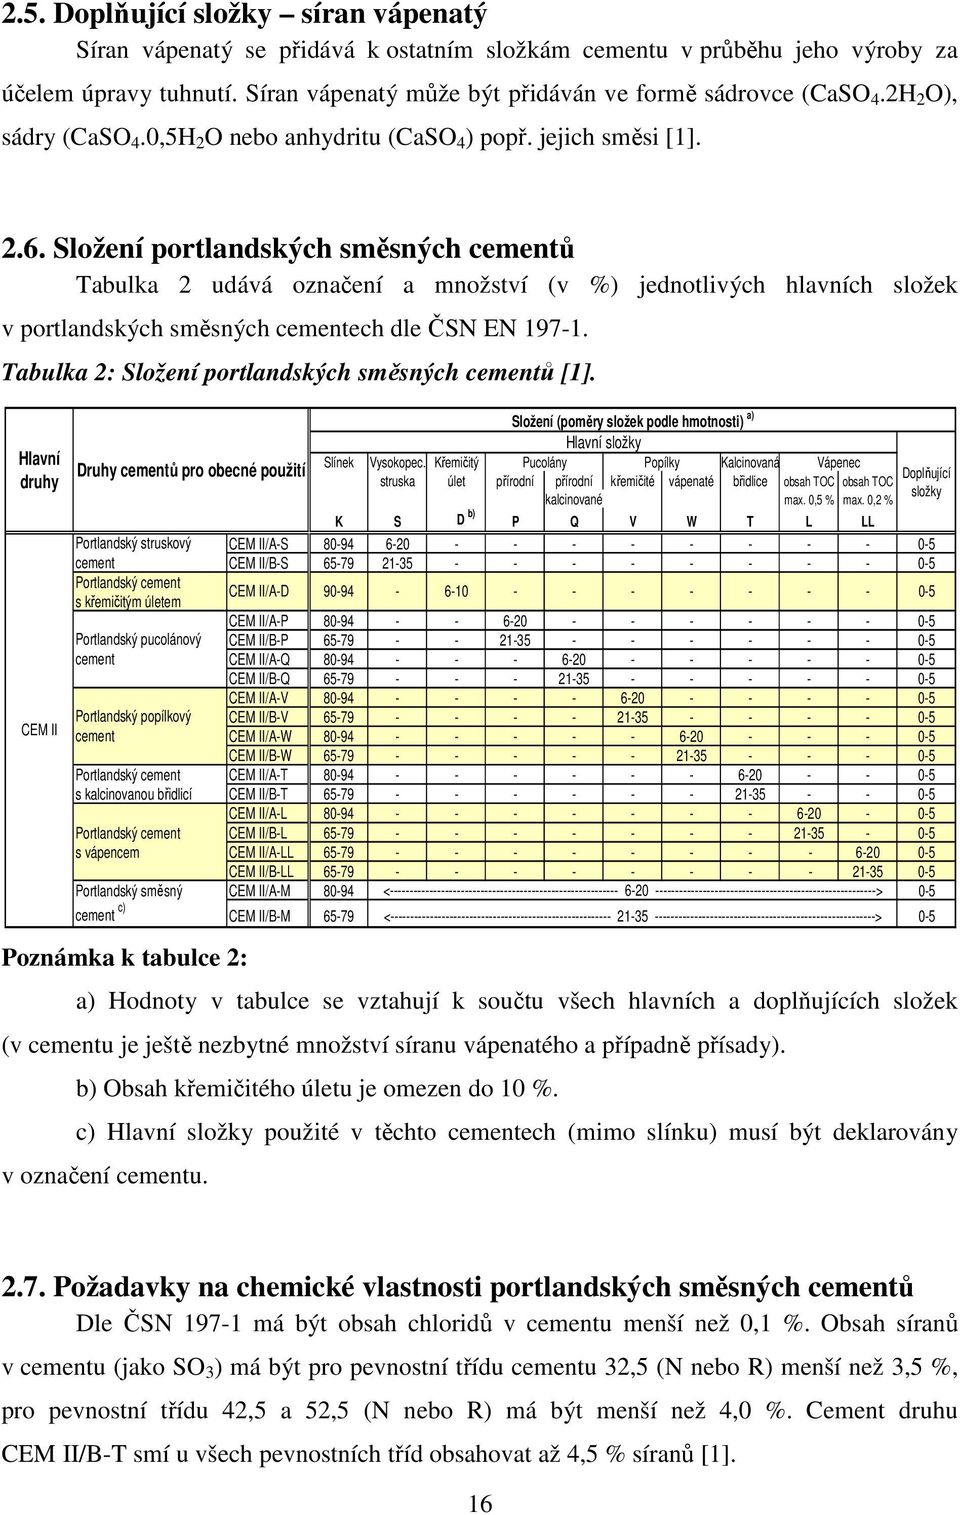 Složení portlandských směsných cementů Tabulka 2 udává označení a množství (v %) jednotlivých hlavních složek v portlandských směsných cementech dle ČSN EN 197-1.